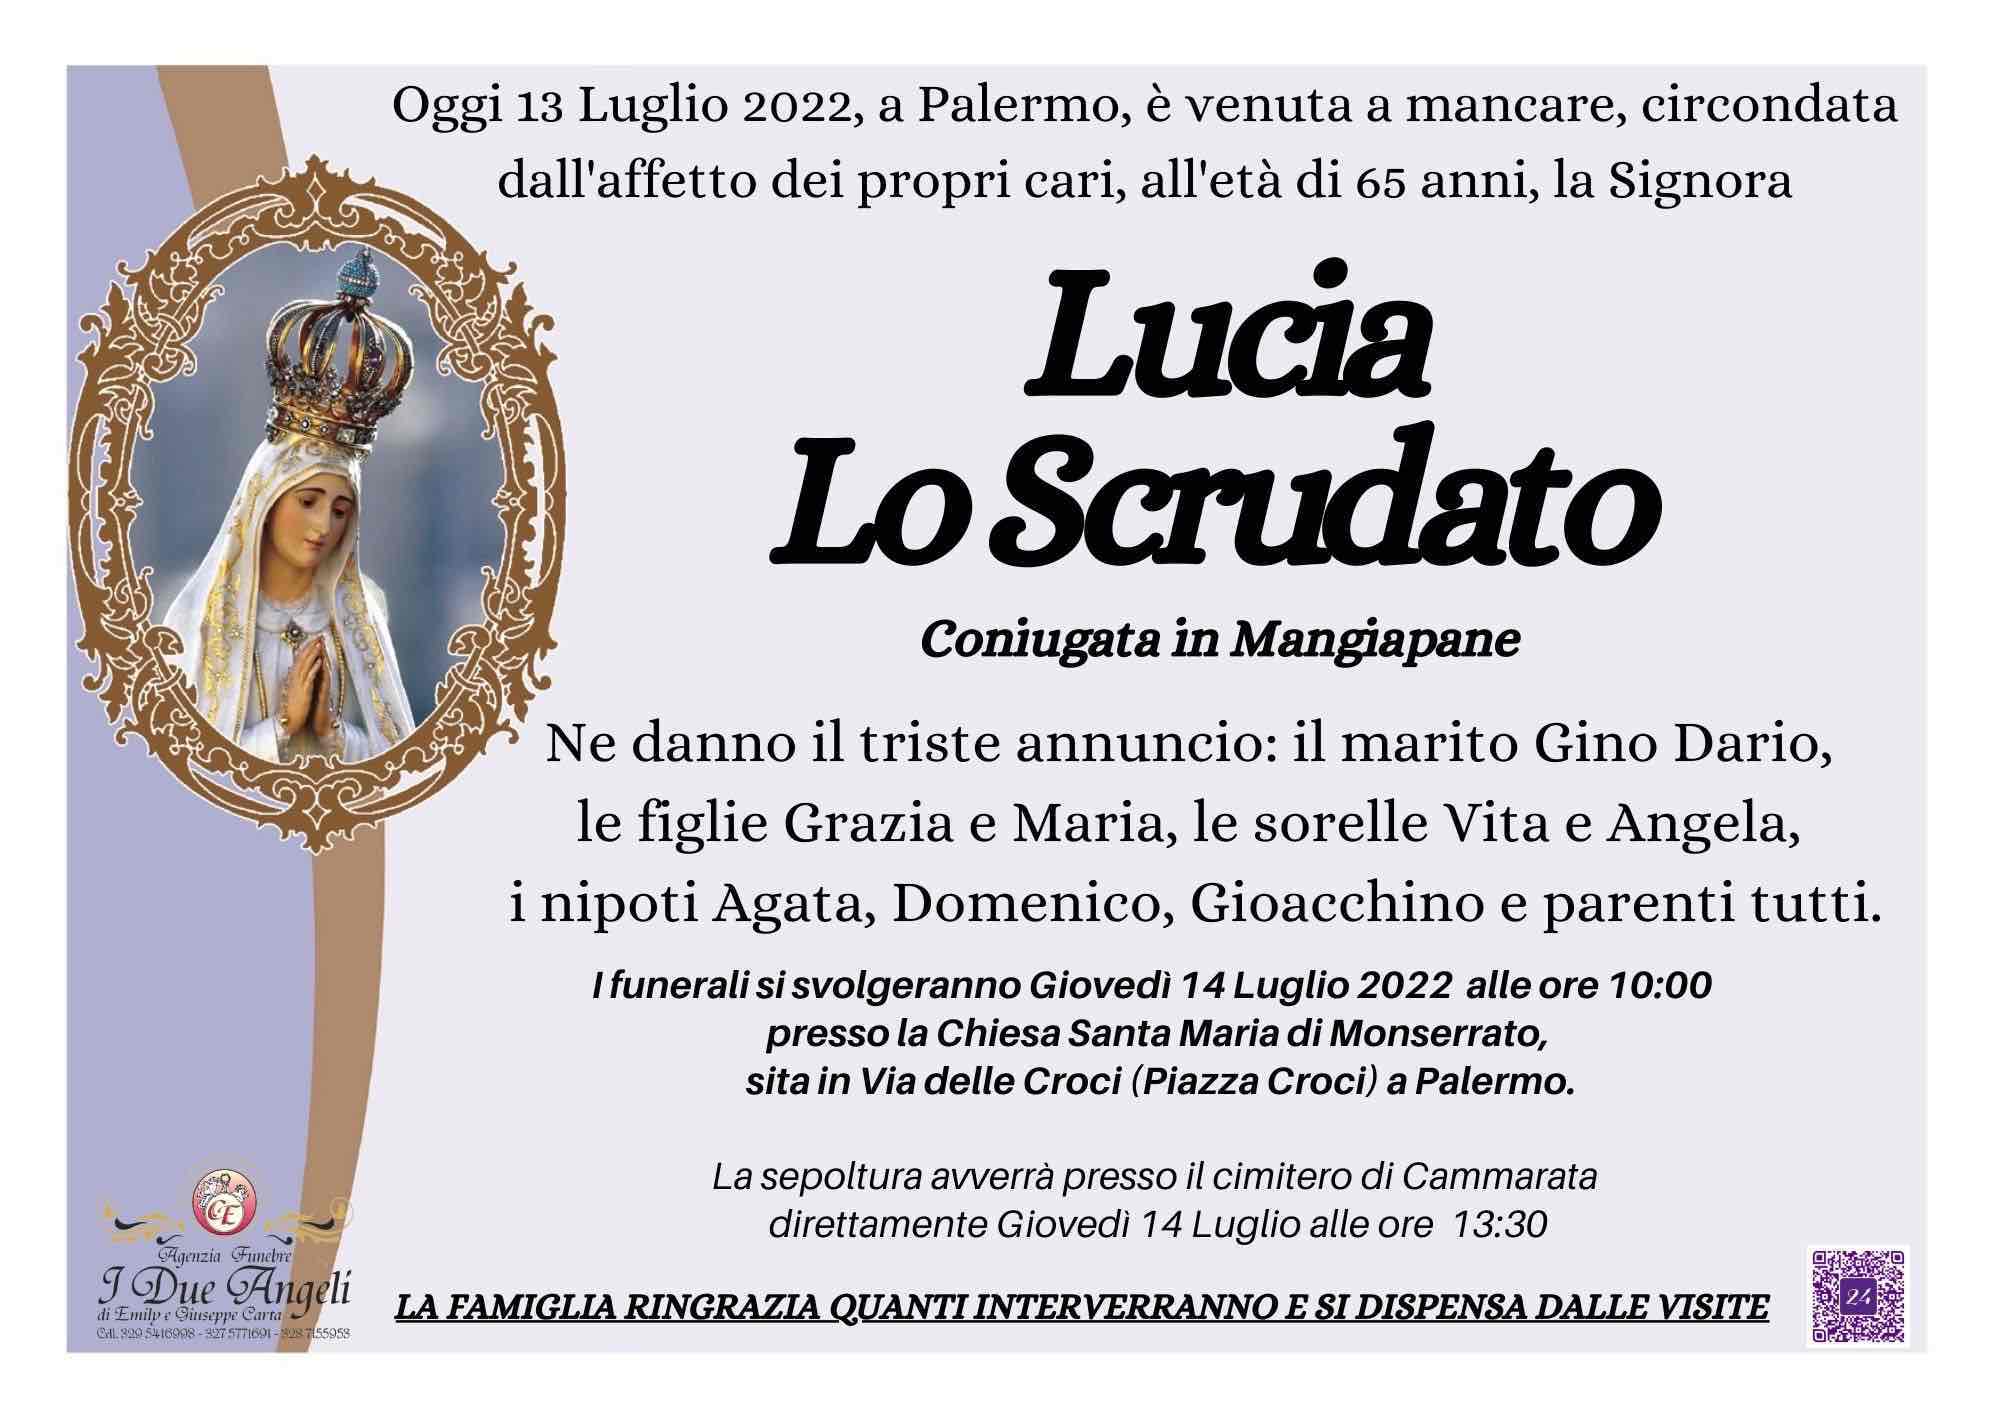 Lucia Lo Scrudato